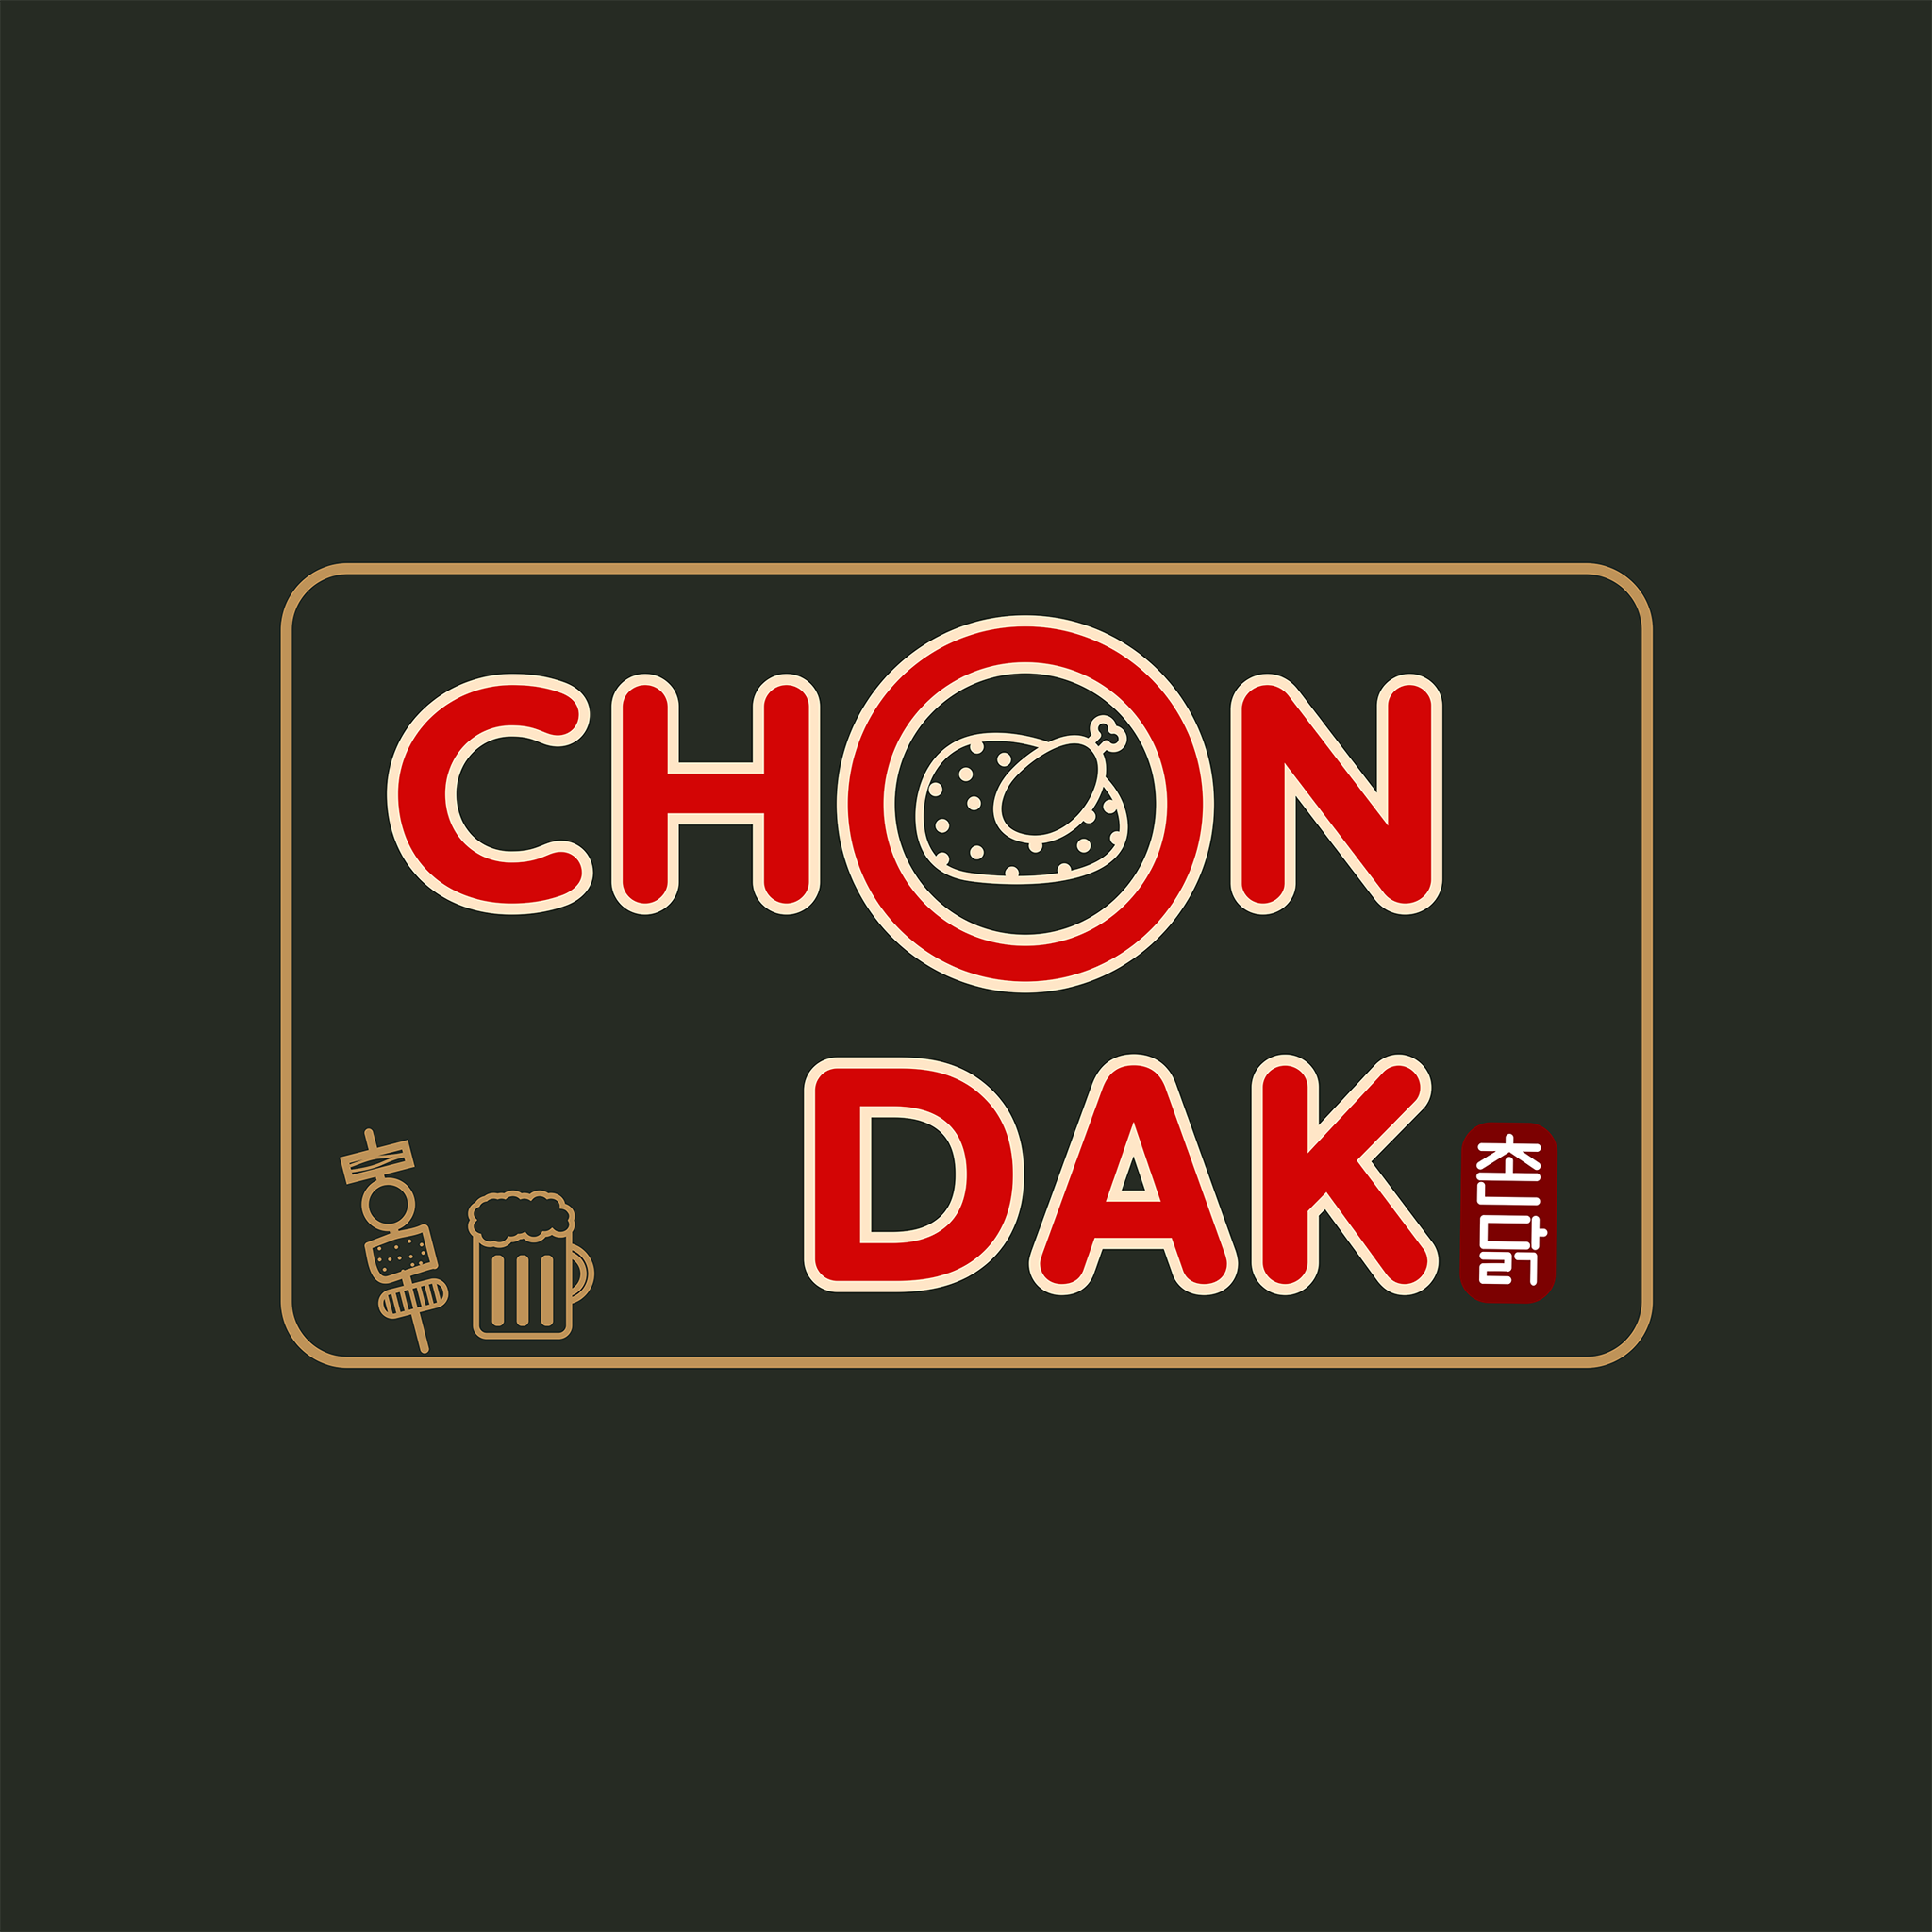 Chon Dak